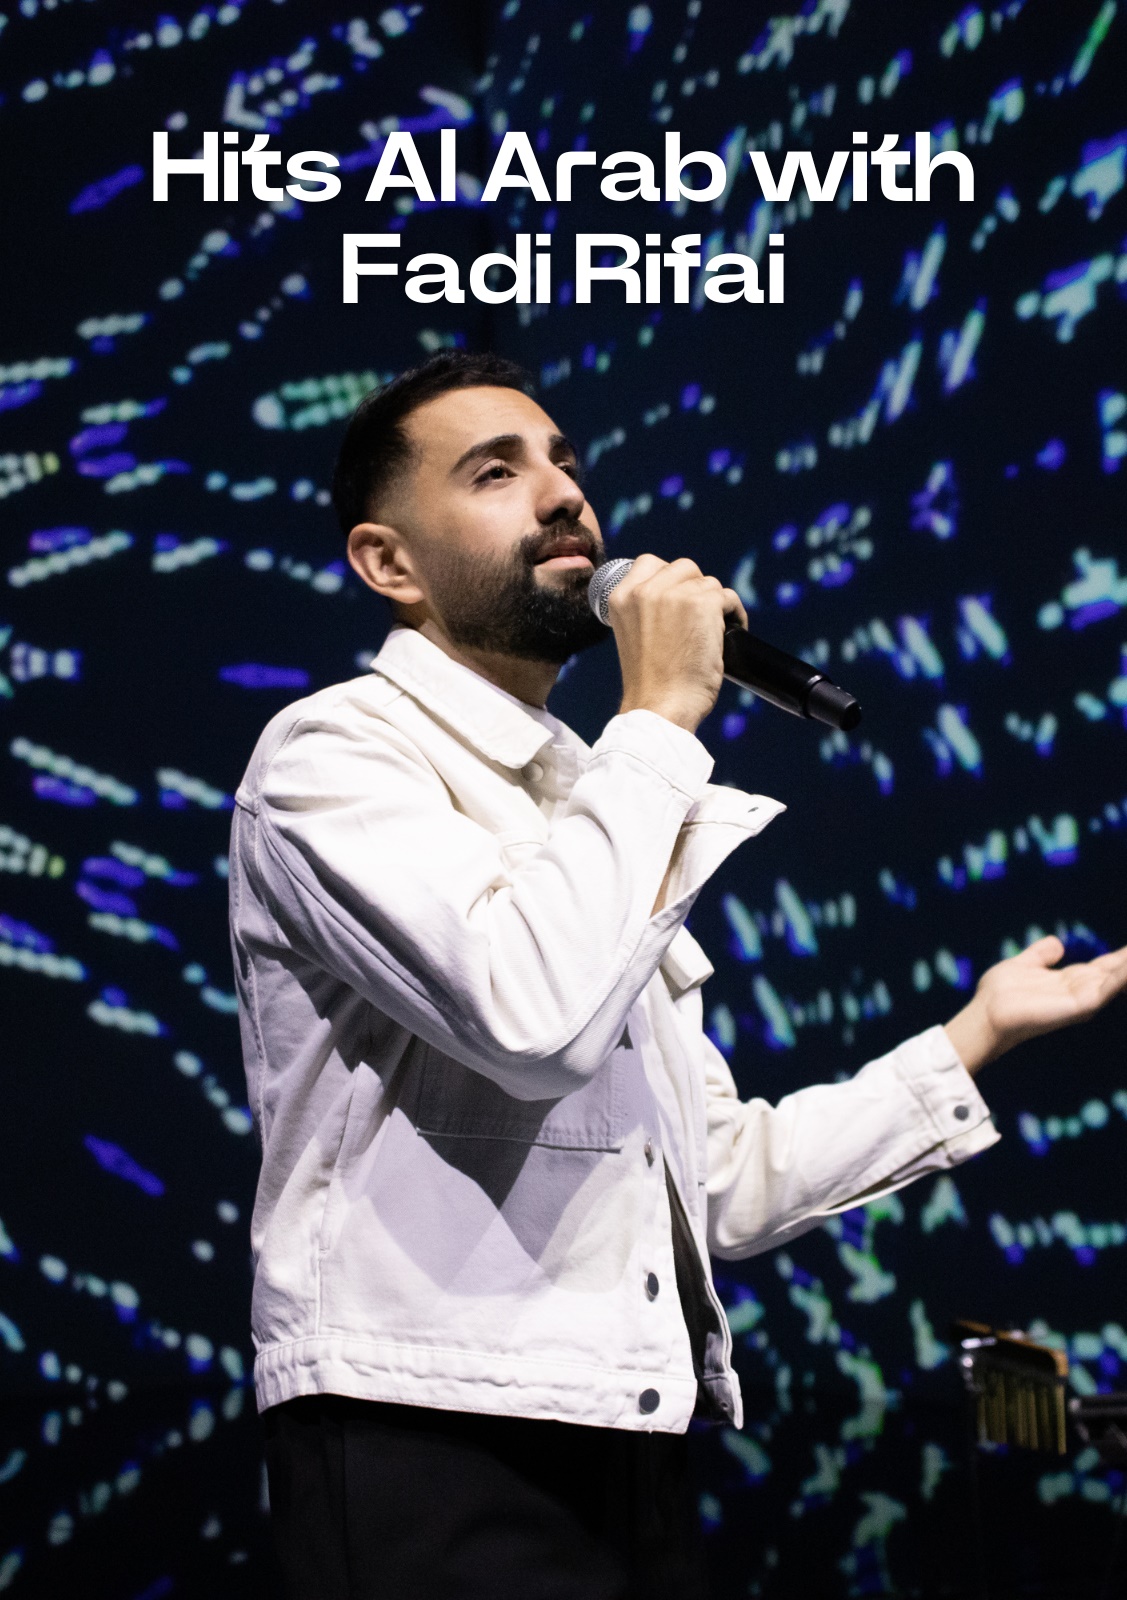 Hits Al Arab with Fadi Rifaai 